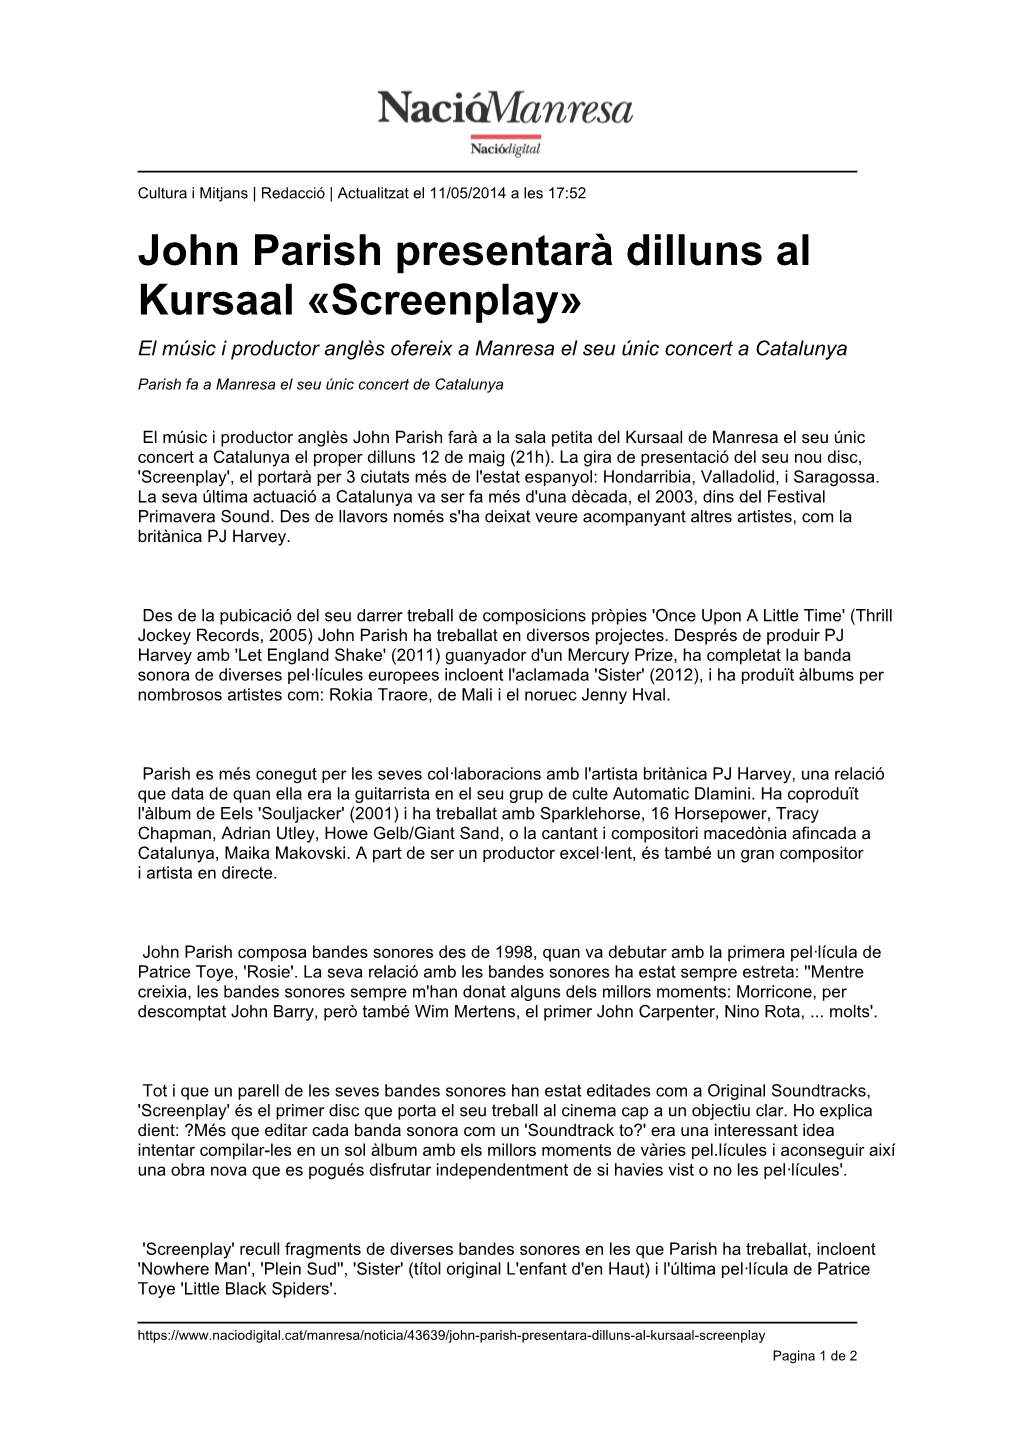 John Parish Presentarà Dilluns Al Kursaal «Screenplay» El Músic I Productor Anglès Ofereix a Manresa El Seu Únic Concert a Catalunya